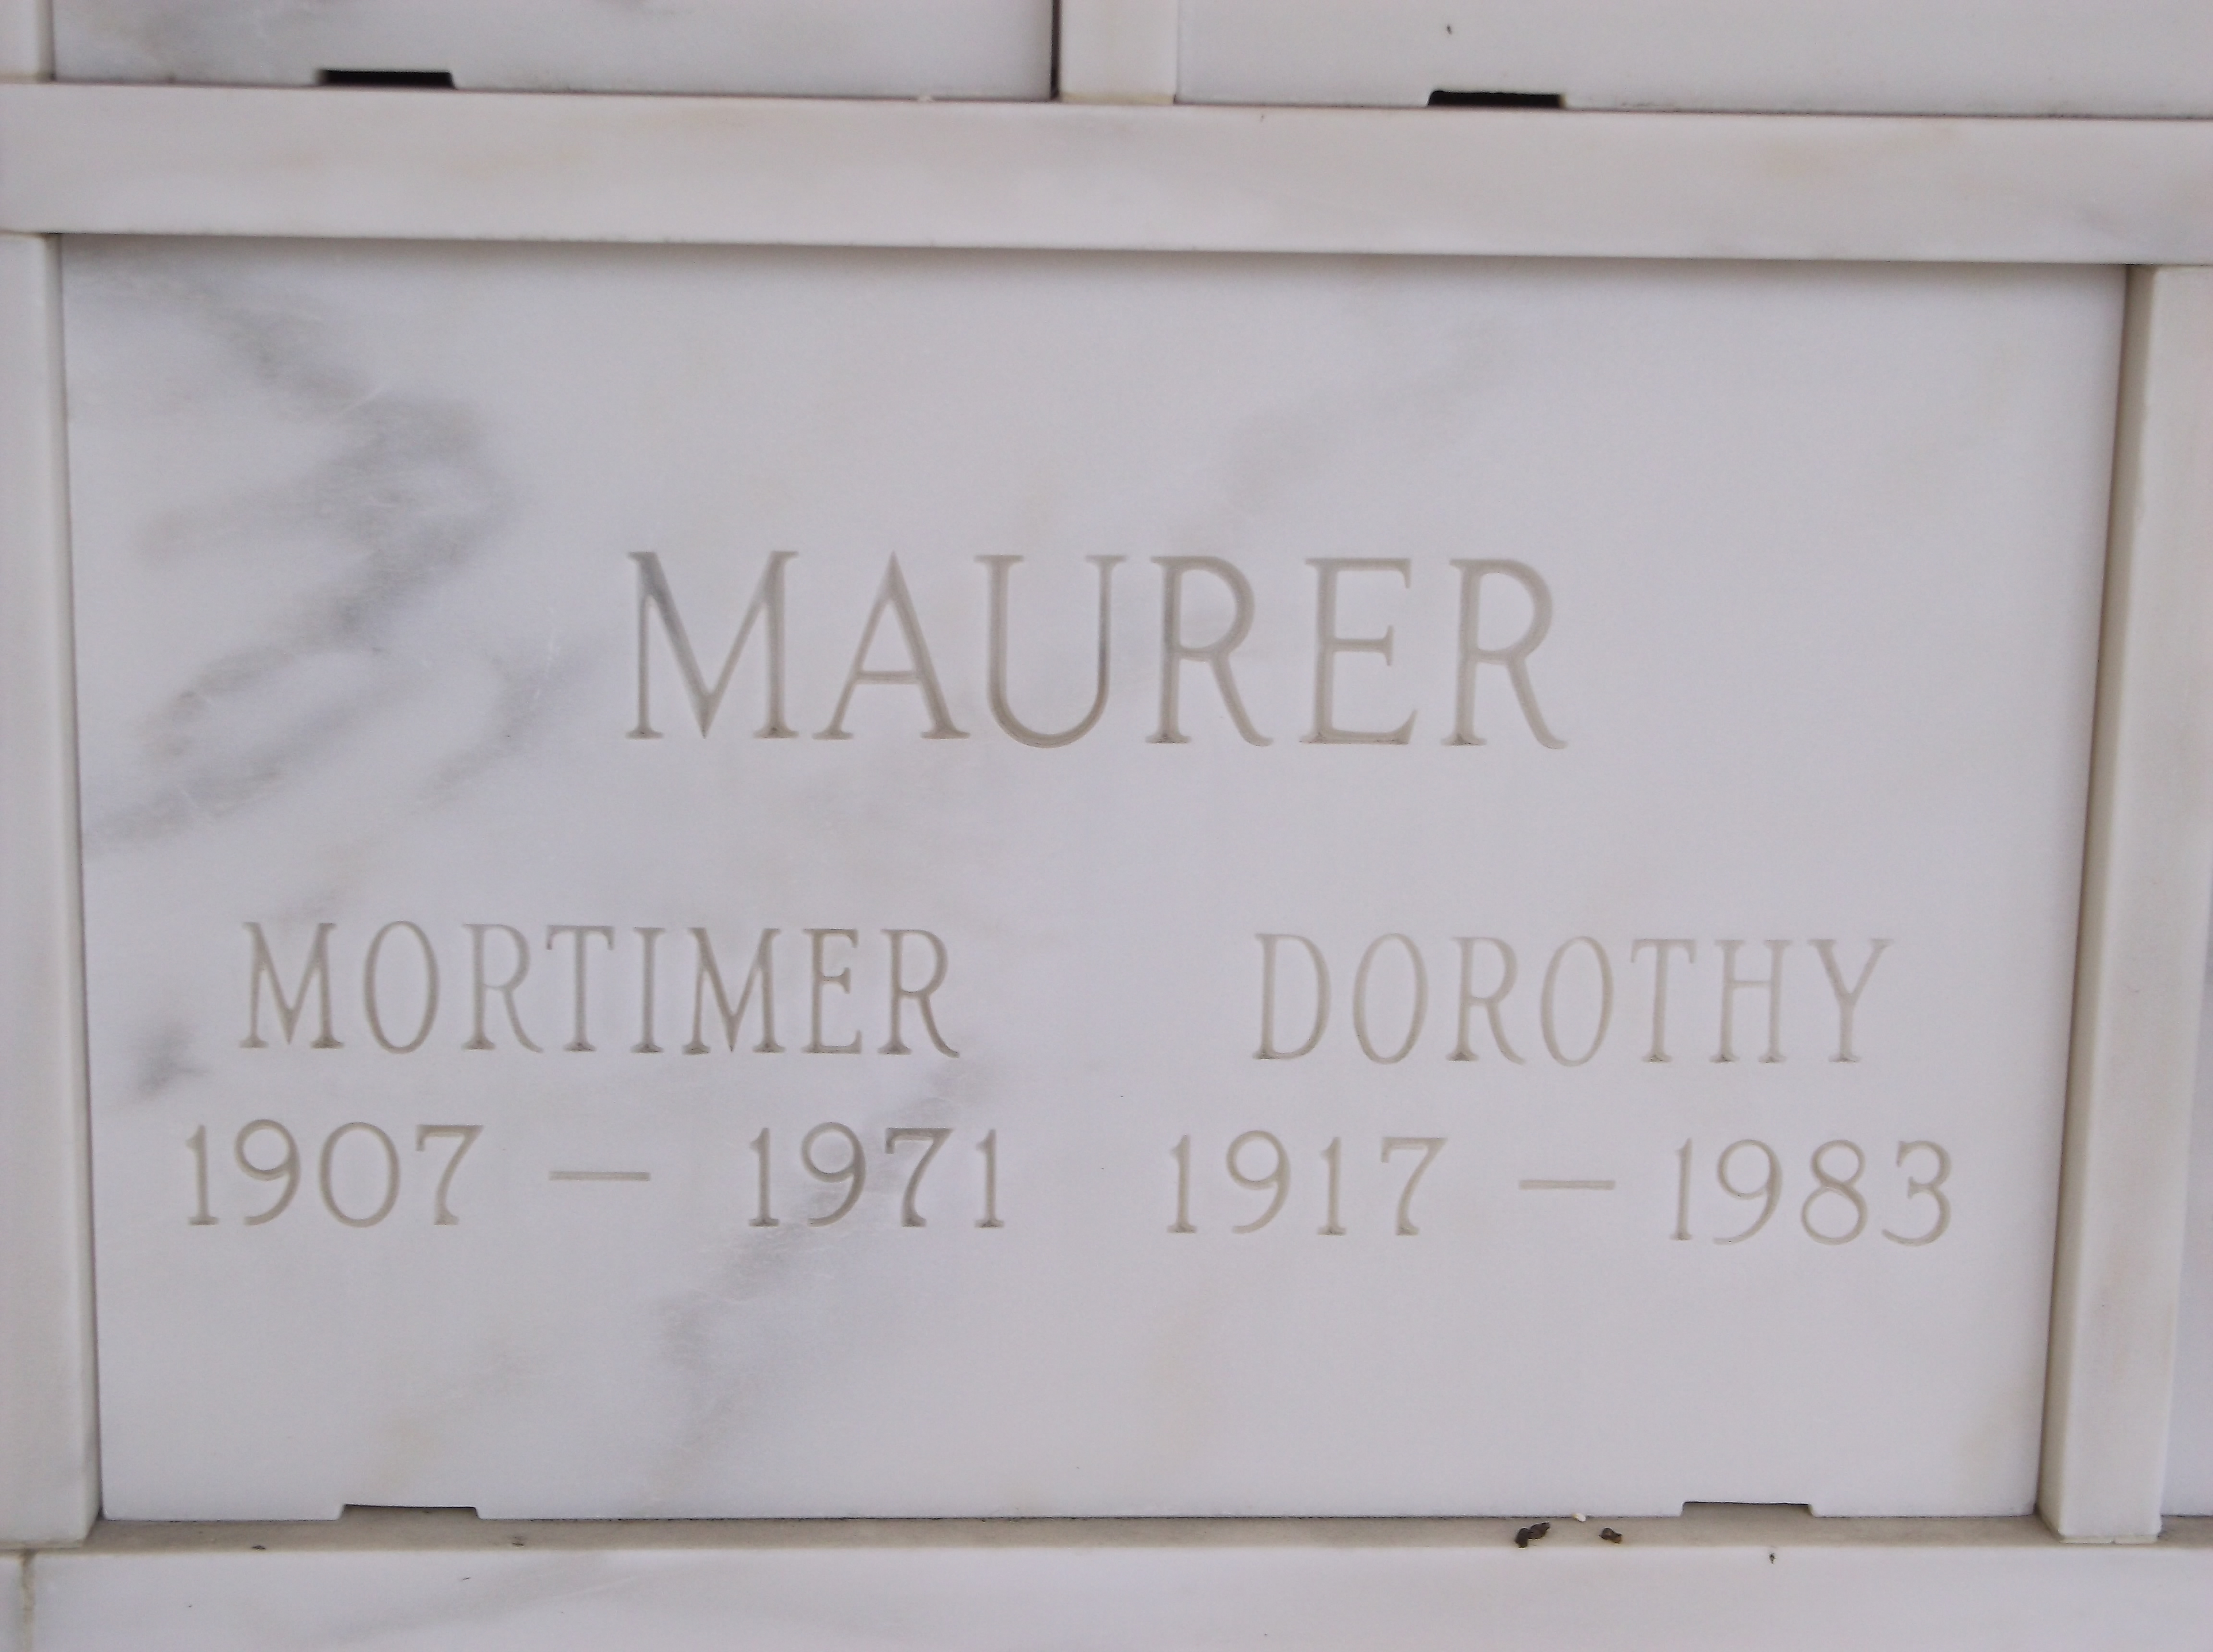 Dorothy Maurer